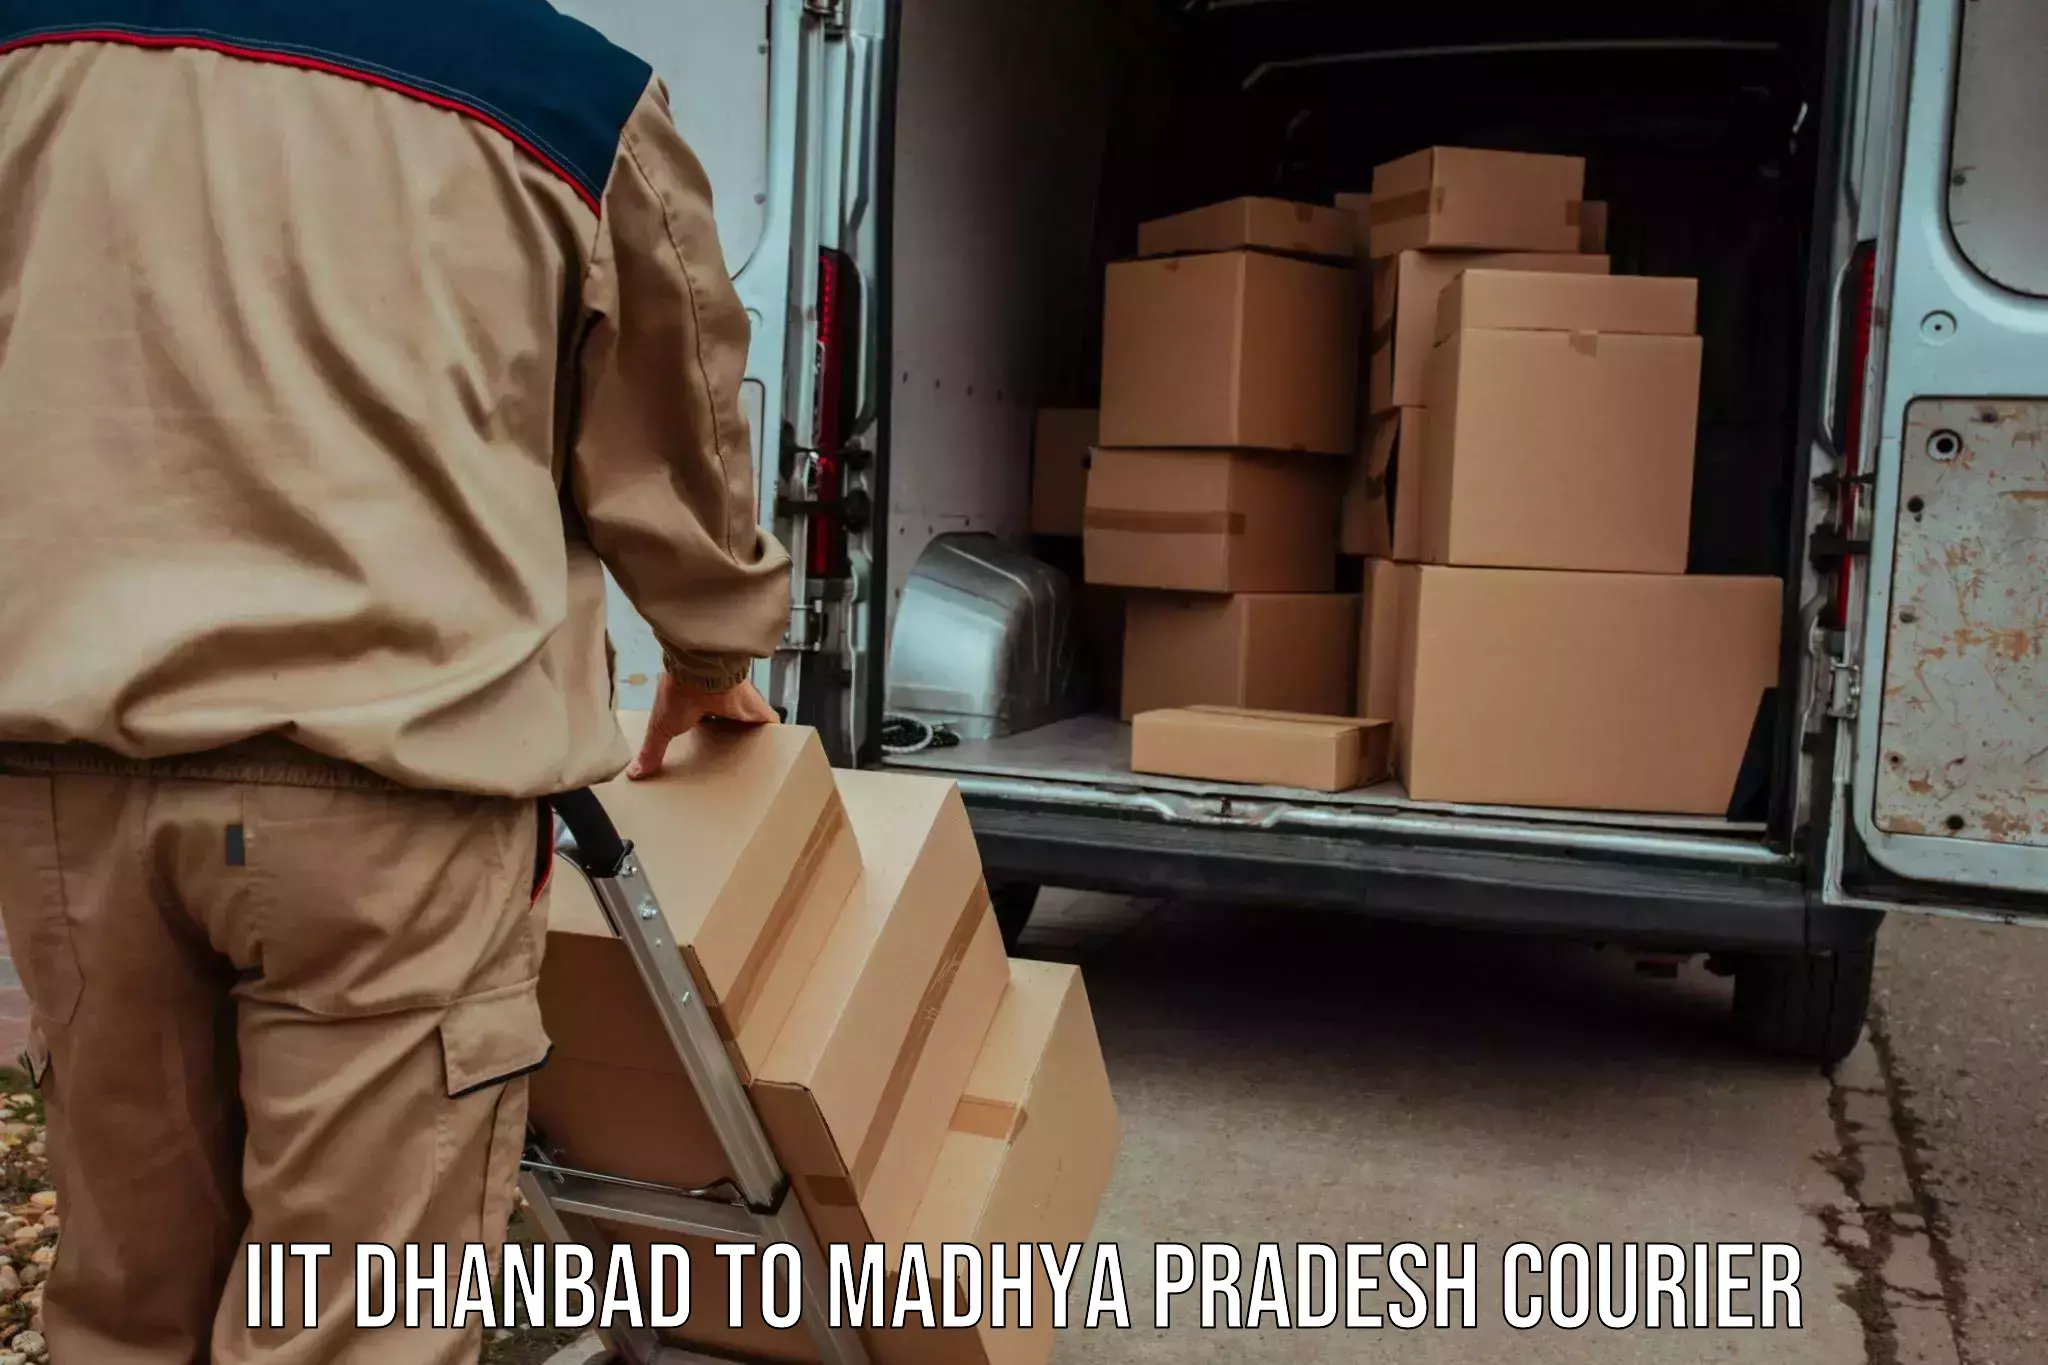 Global courier networks IIT Dhanbad to Sohagi